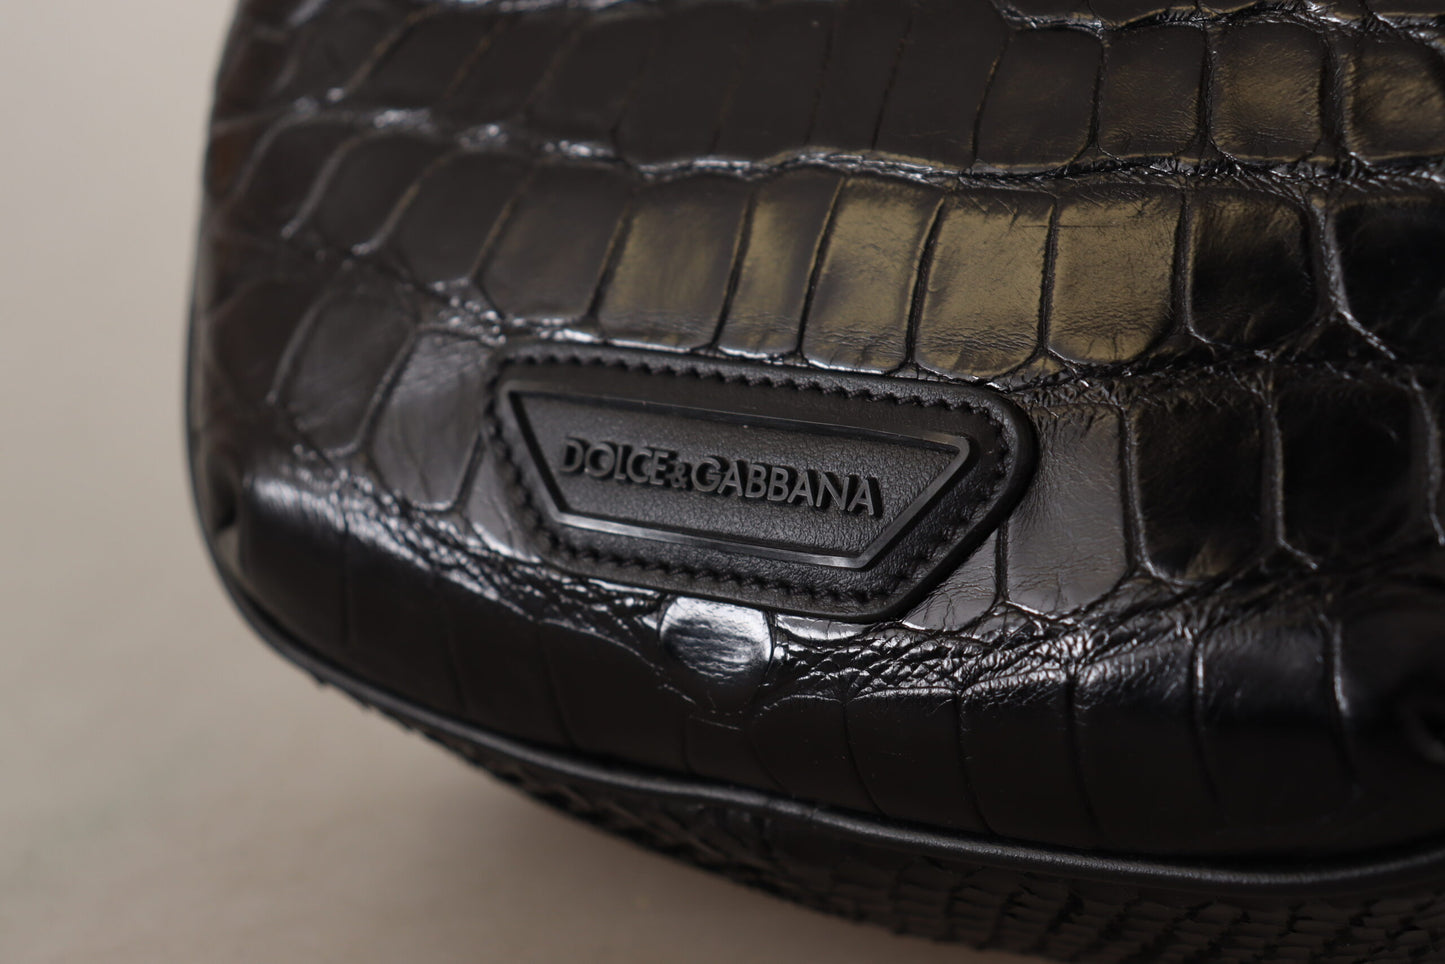 Dolce & Gabbana Black DG Logo en cuir exotique Fanny Pack Pouch Sac